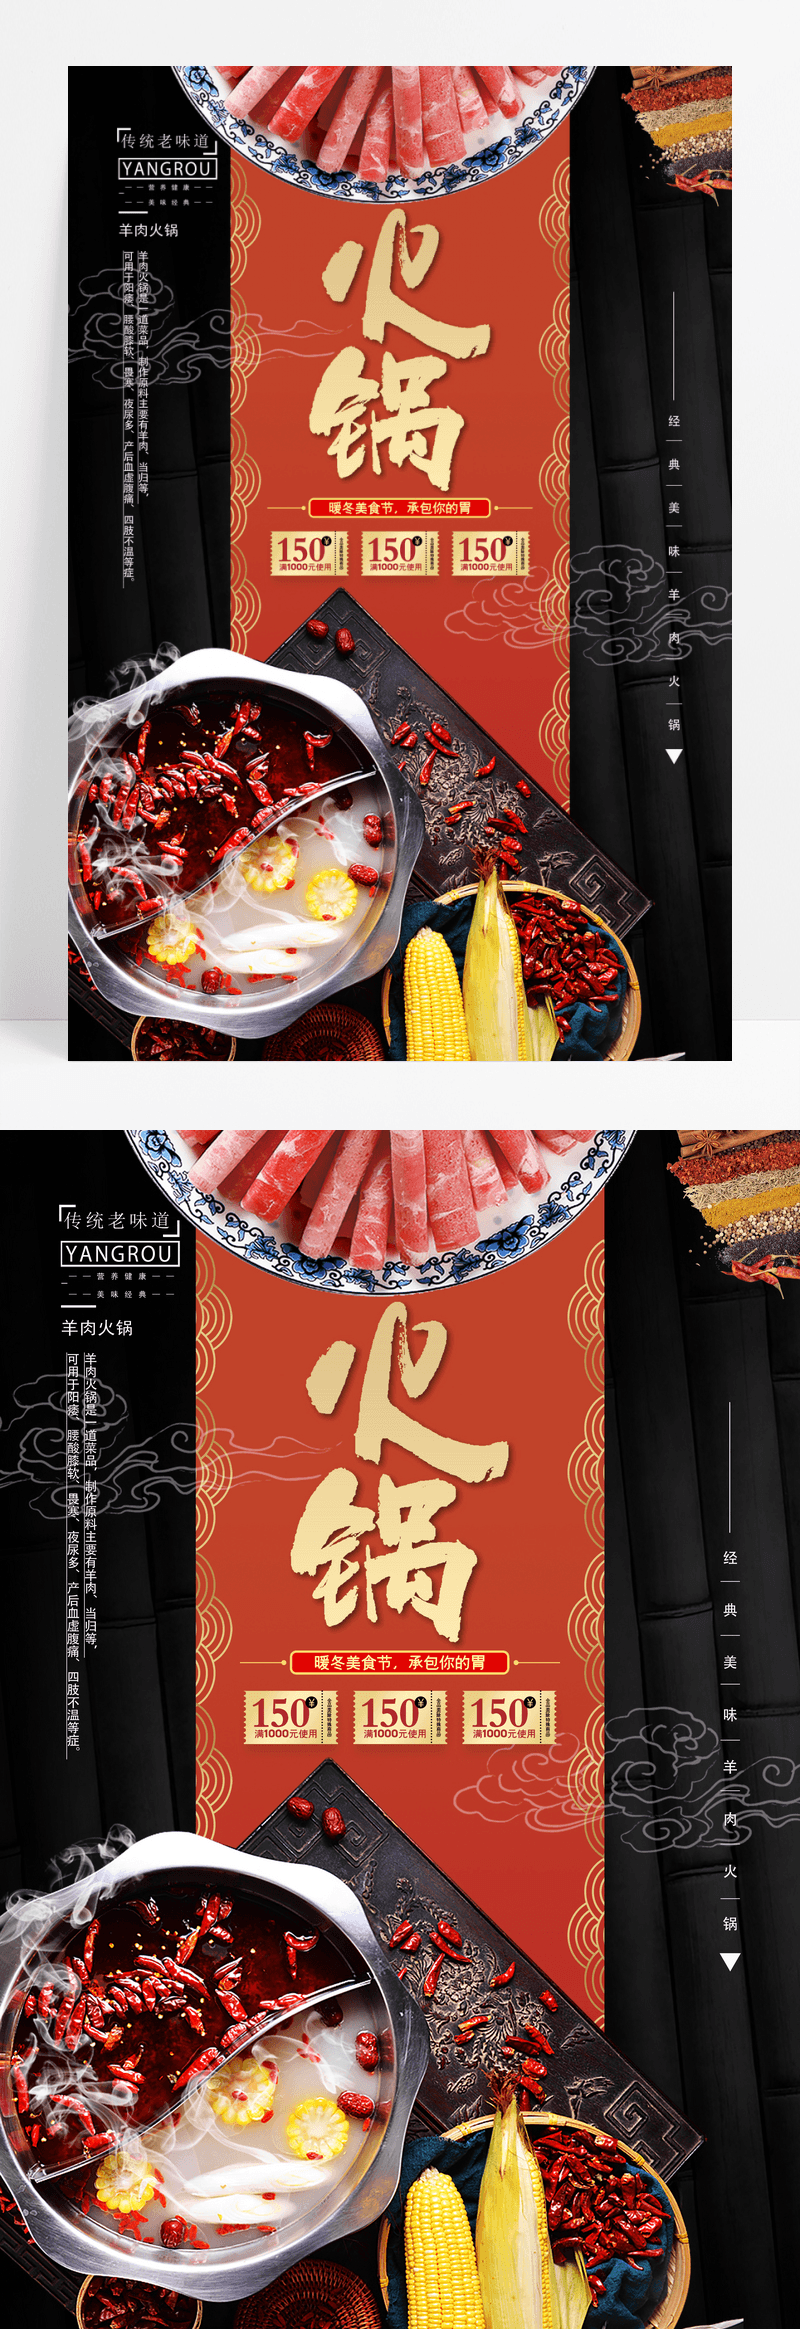 时尚大气秘制火锅暖冬美食海报设计